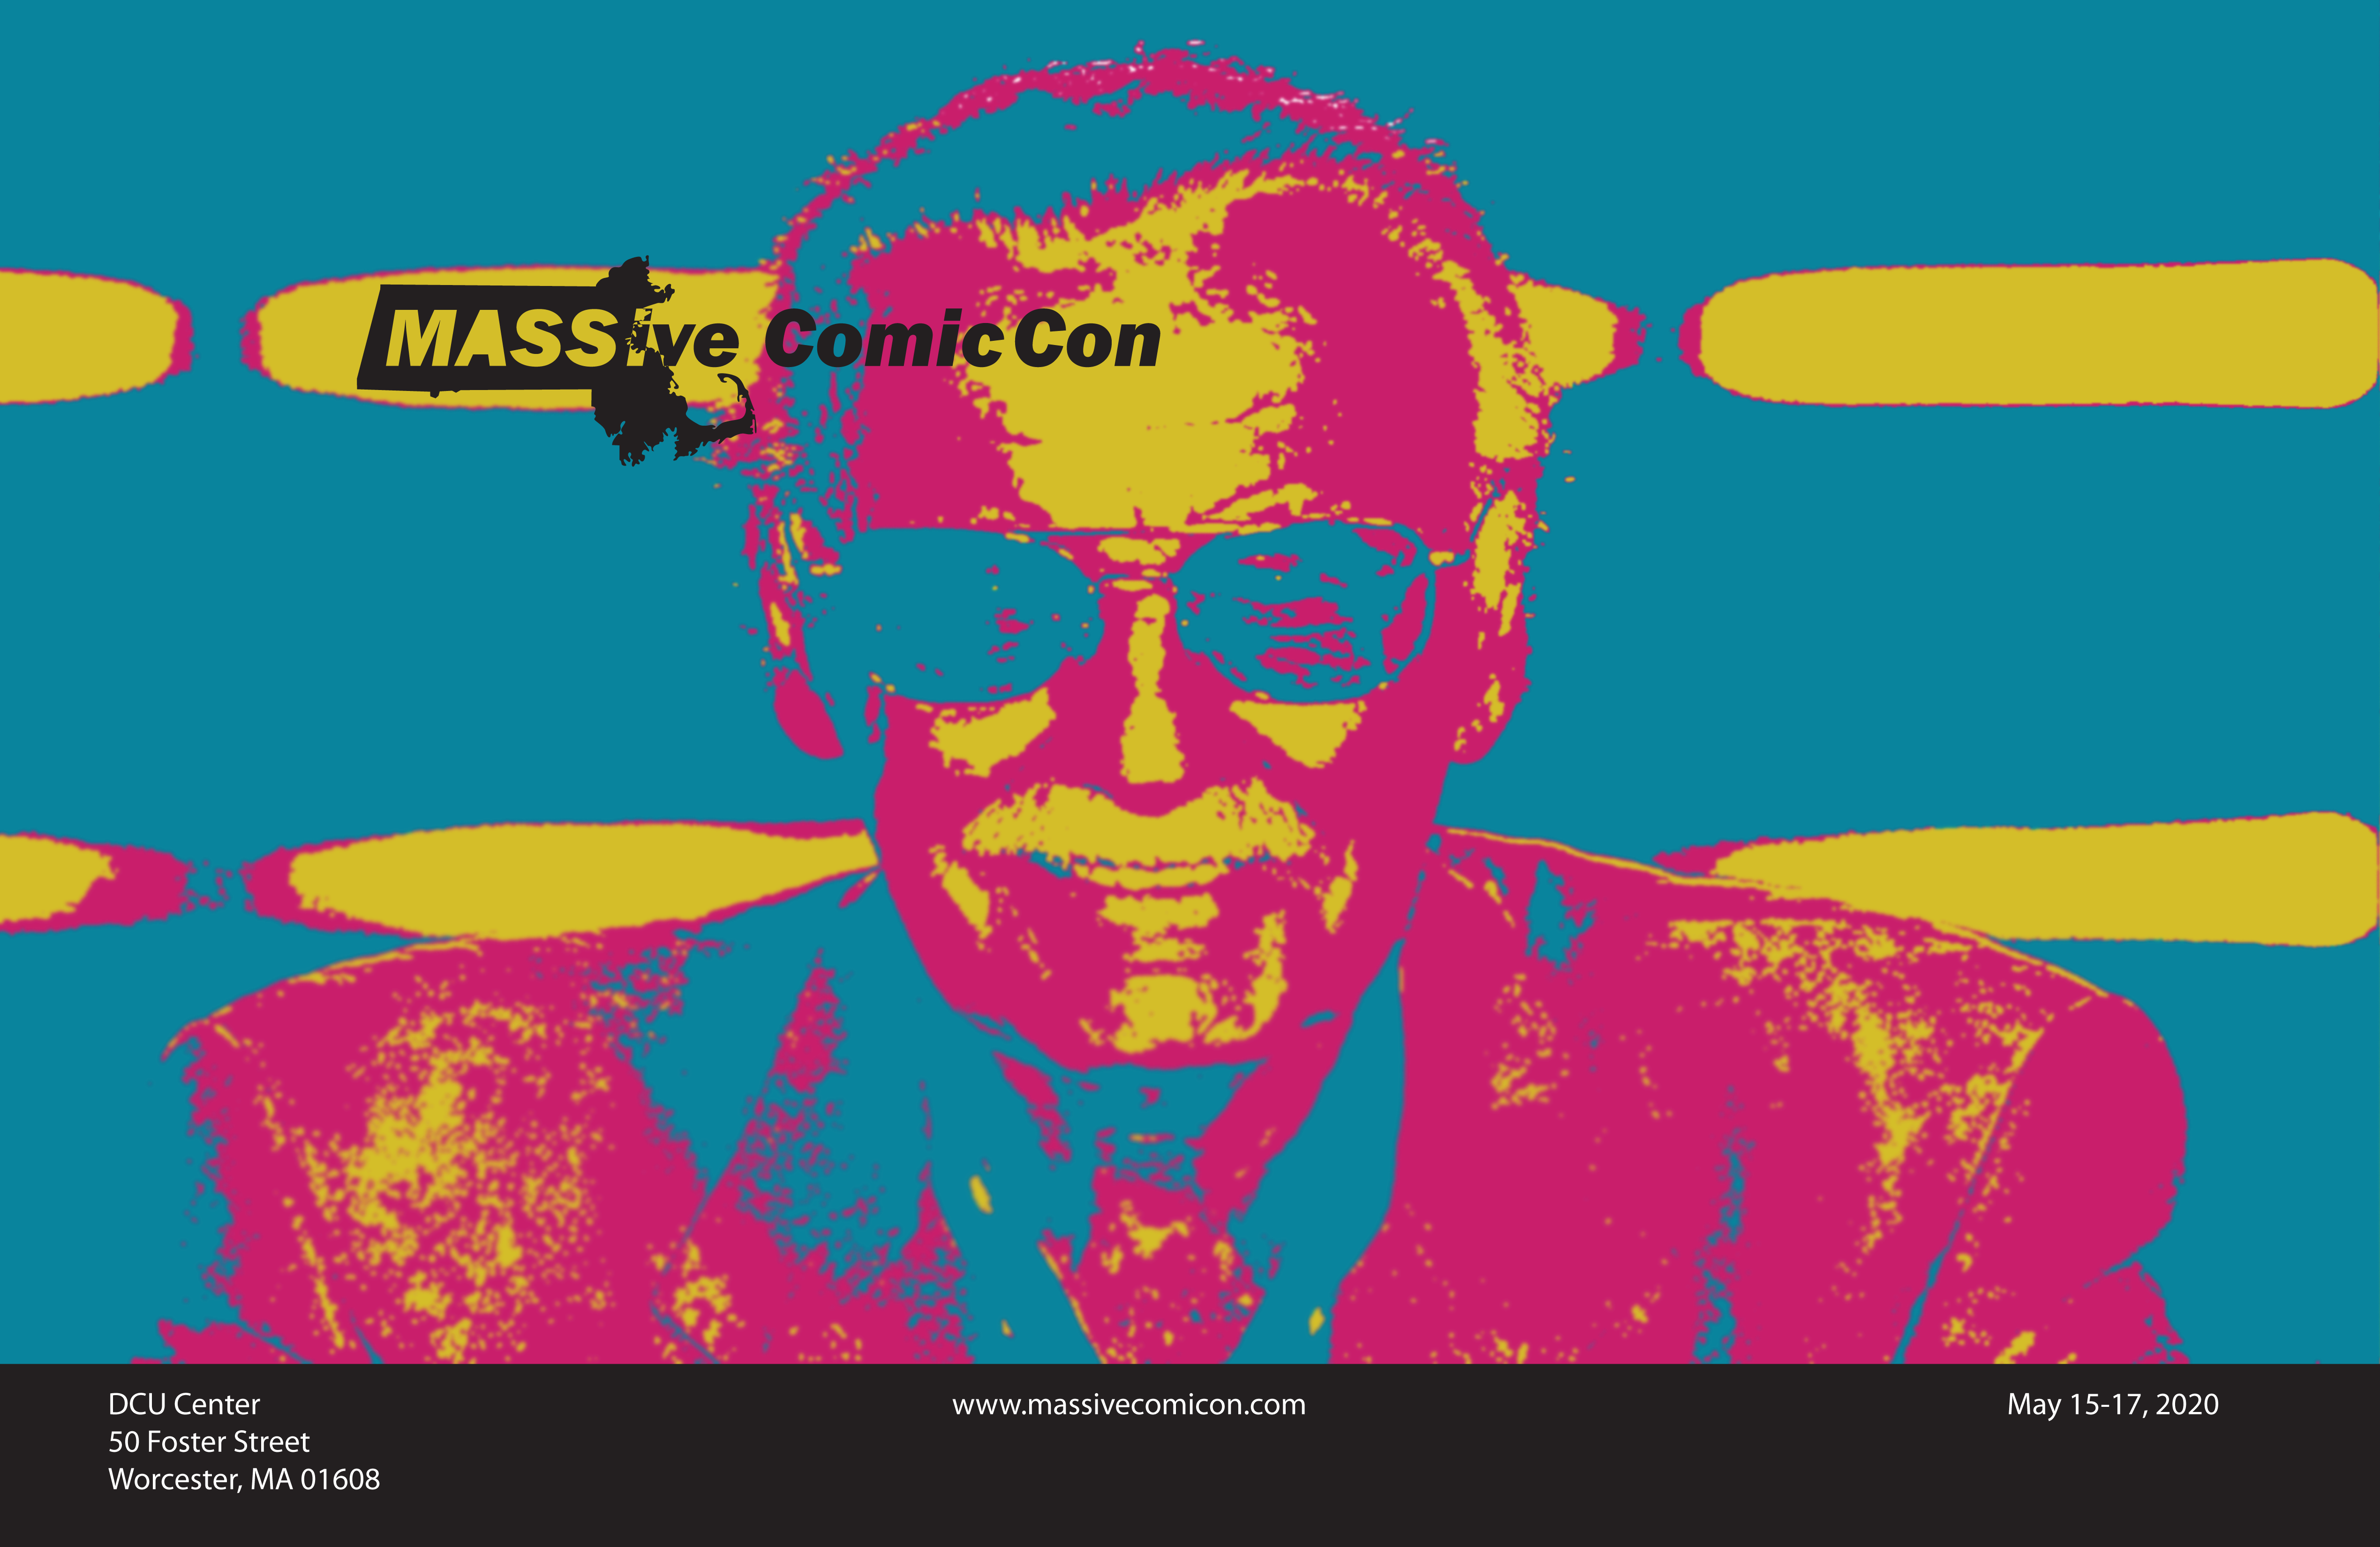 MASSive Comic Con